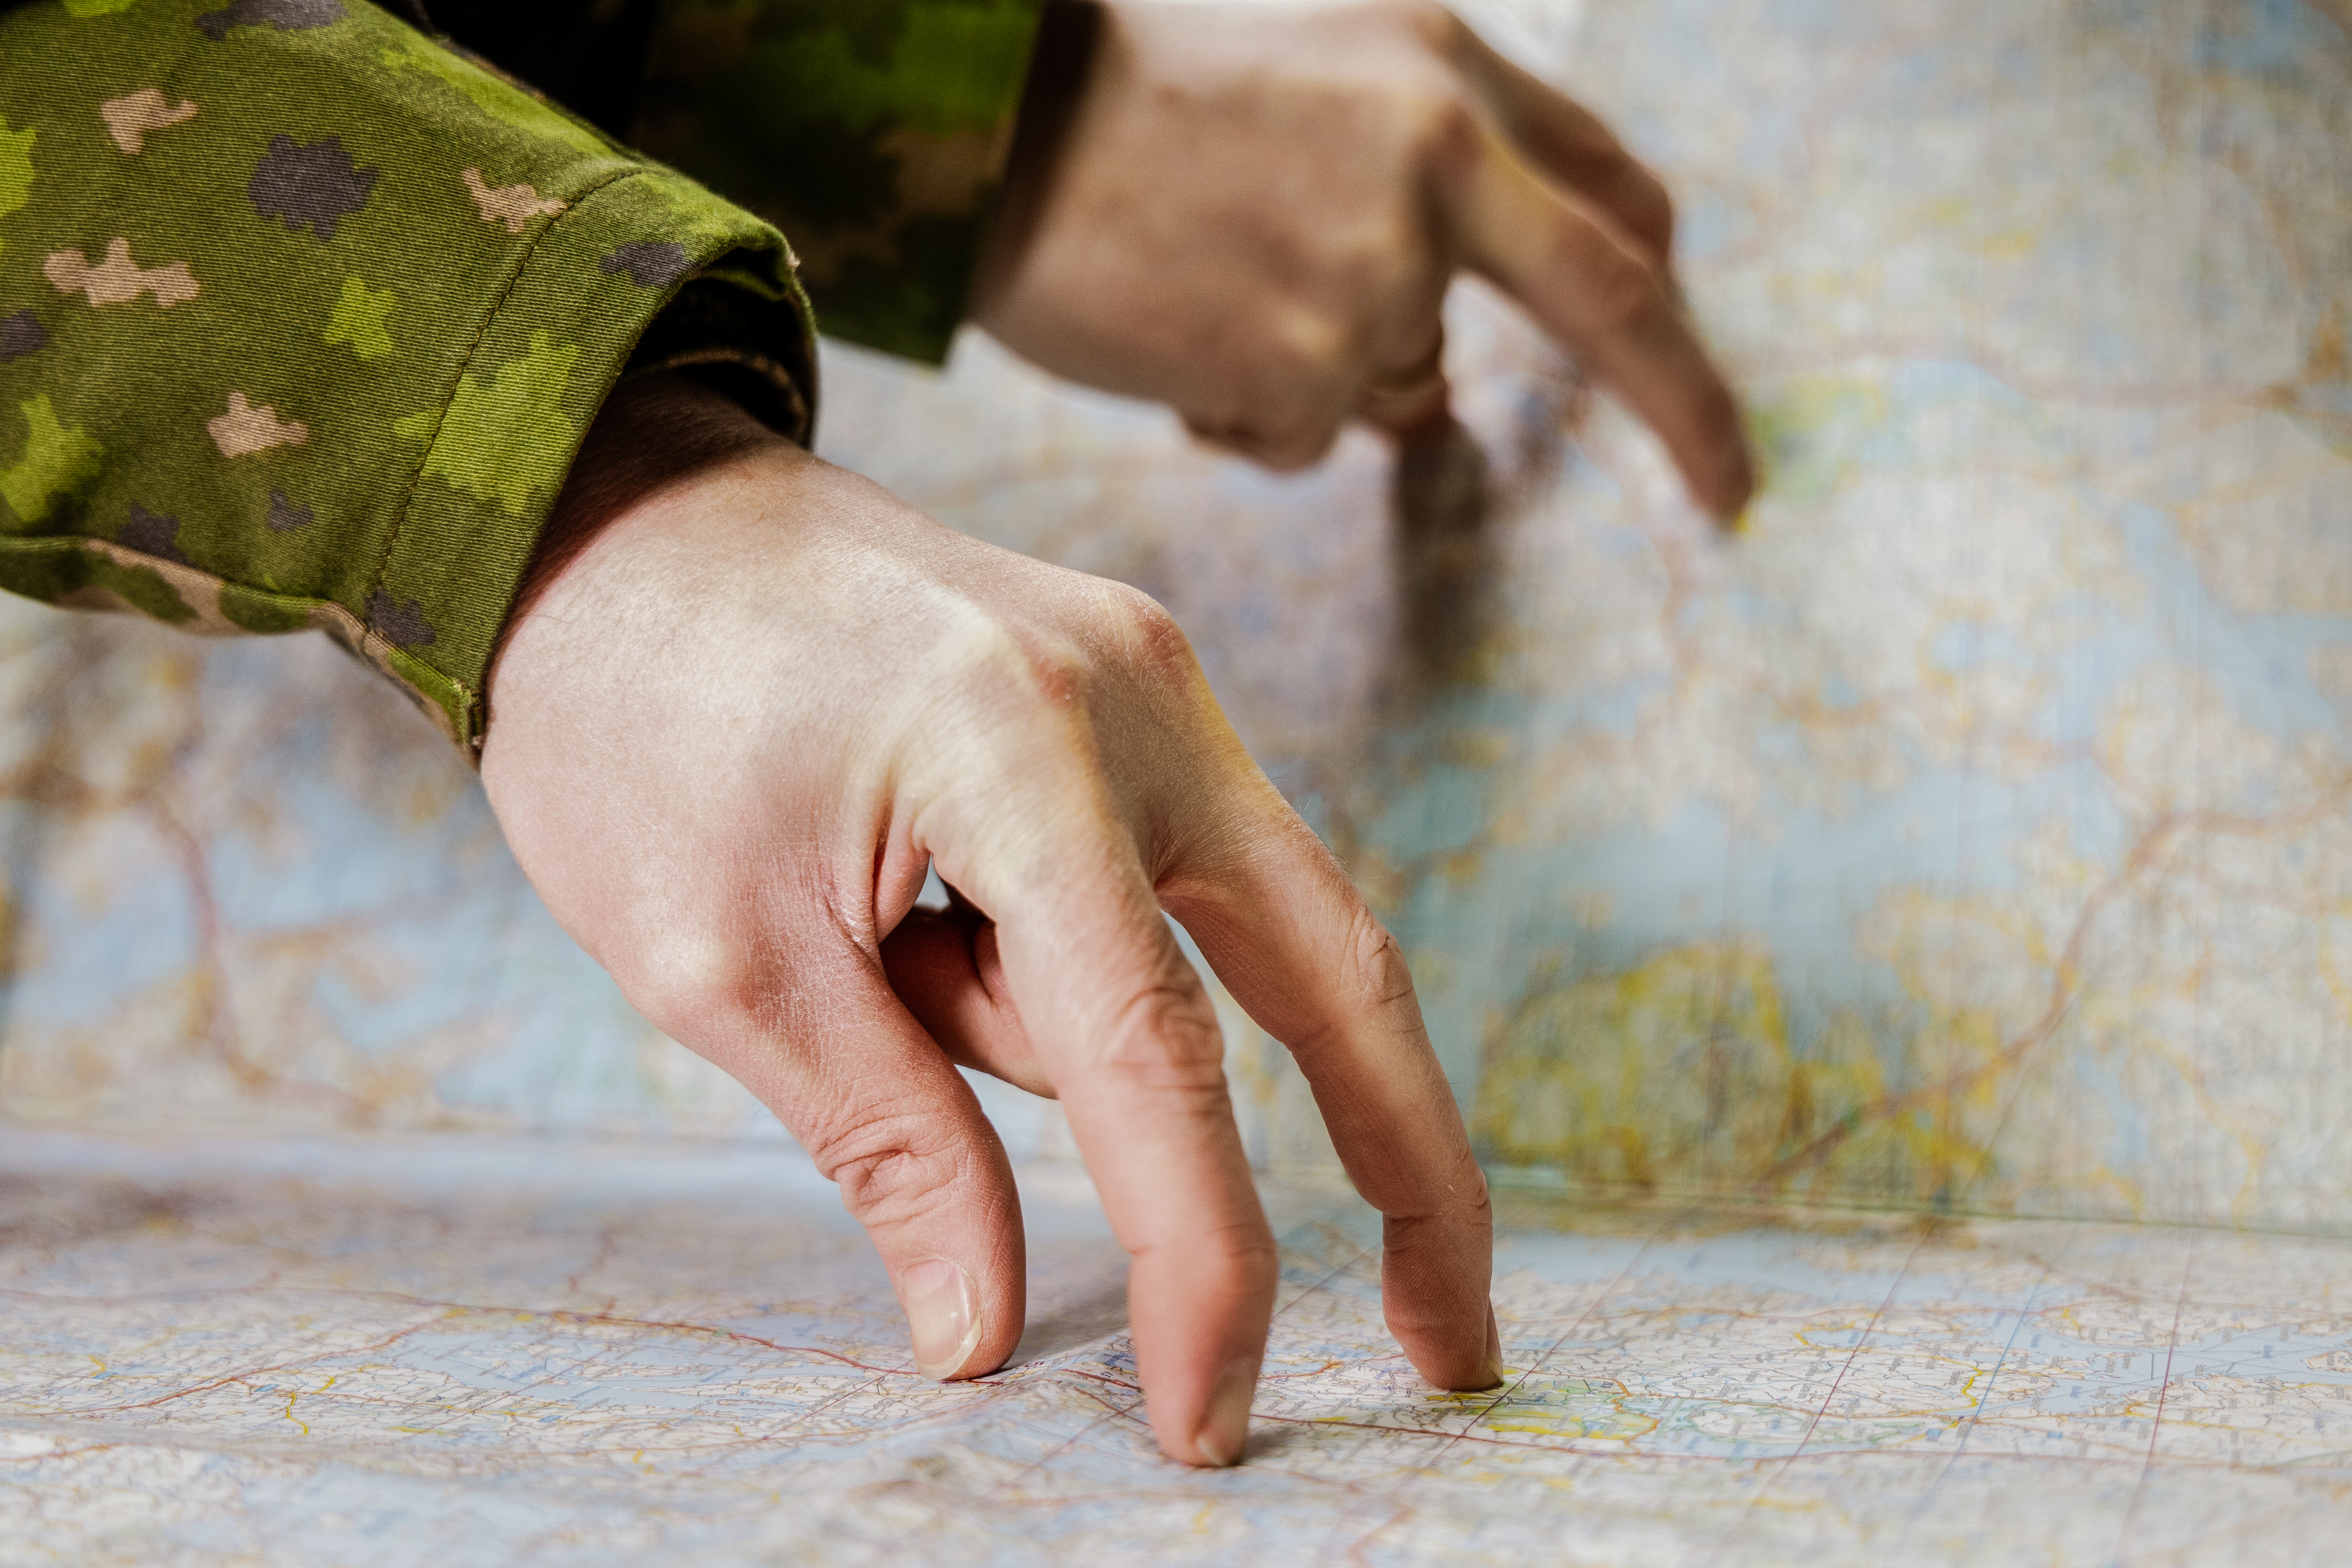 Kuvassa sotilaan käsi kartalla mittaamassa välimatkoja. Sotilaspuvun hiha näkyy, kartta on alapuolella ja ympärillä.